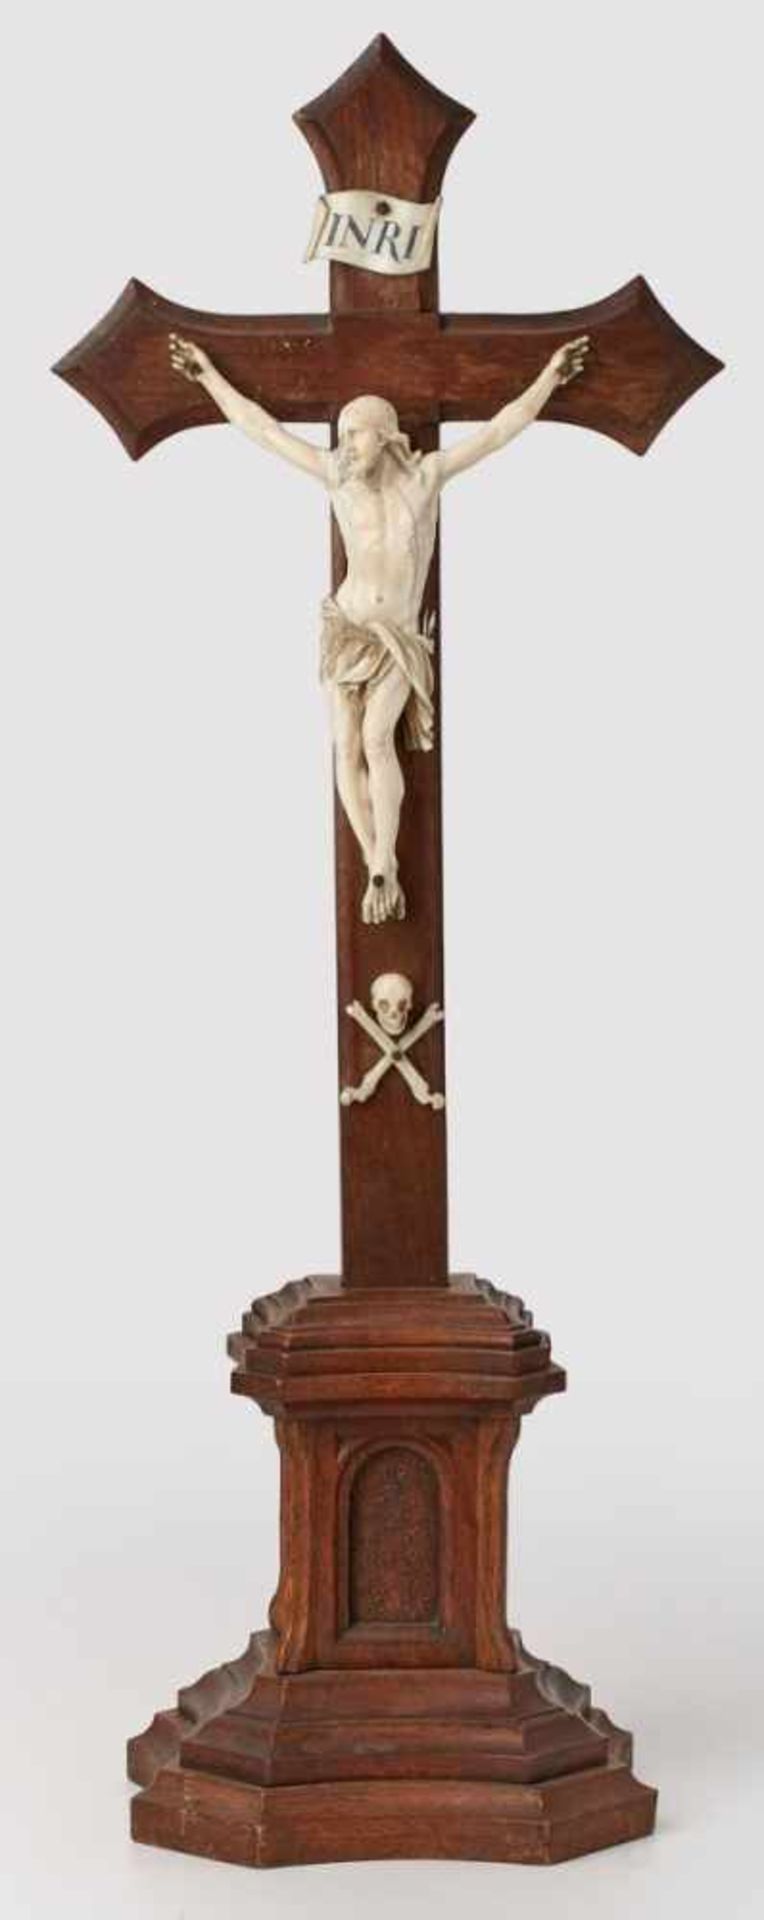 Kruzifix, wohl 18. Jh.Elfenbein-Corpus, vollrd geschnitzt. Fein aus- gearbeiteter Drei-Nagel-Typus